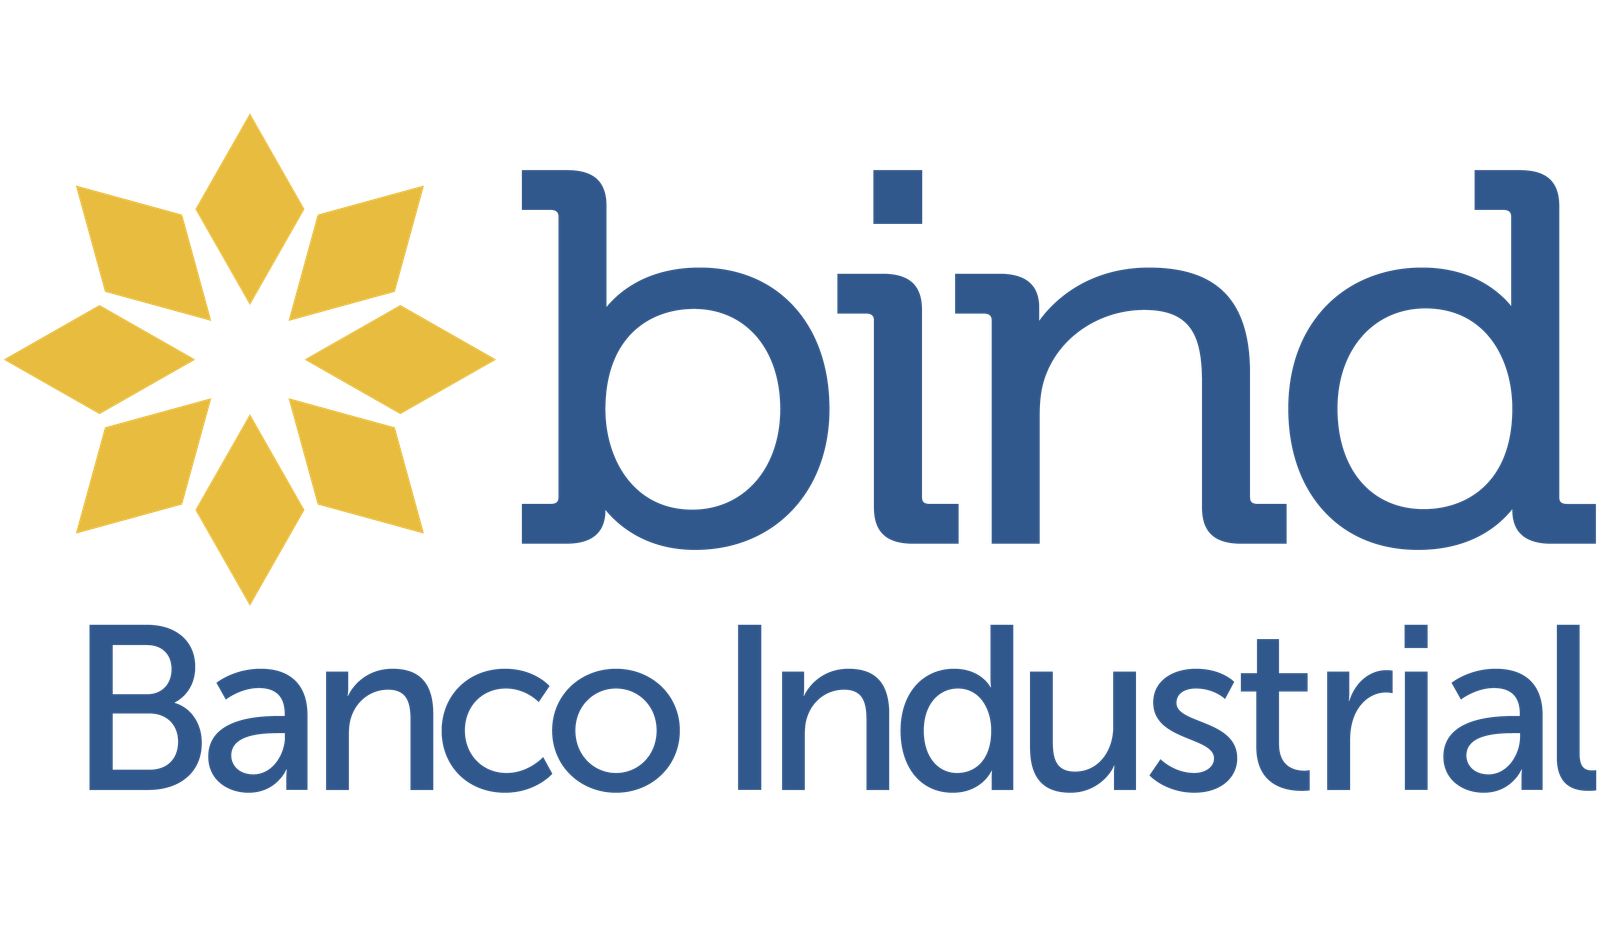 Banco Industrial